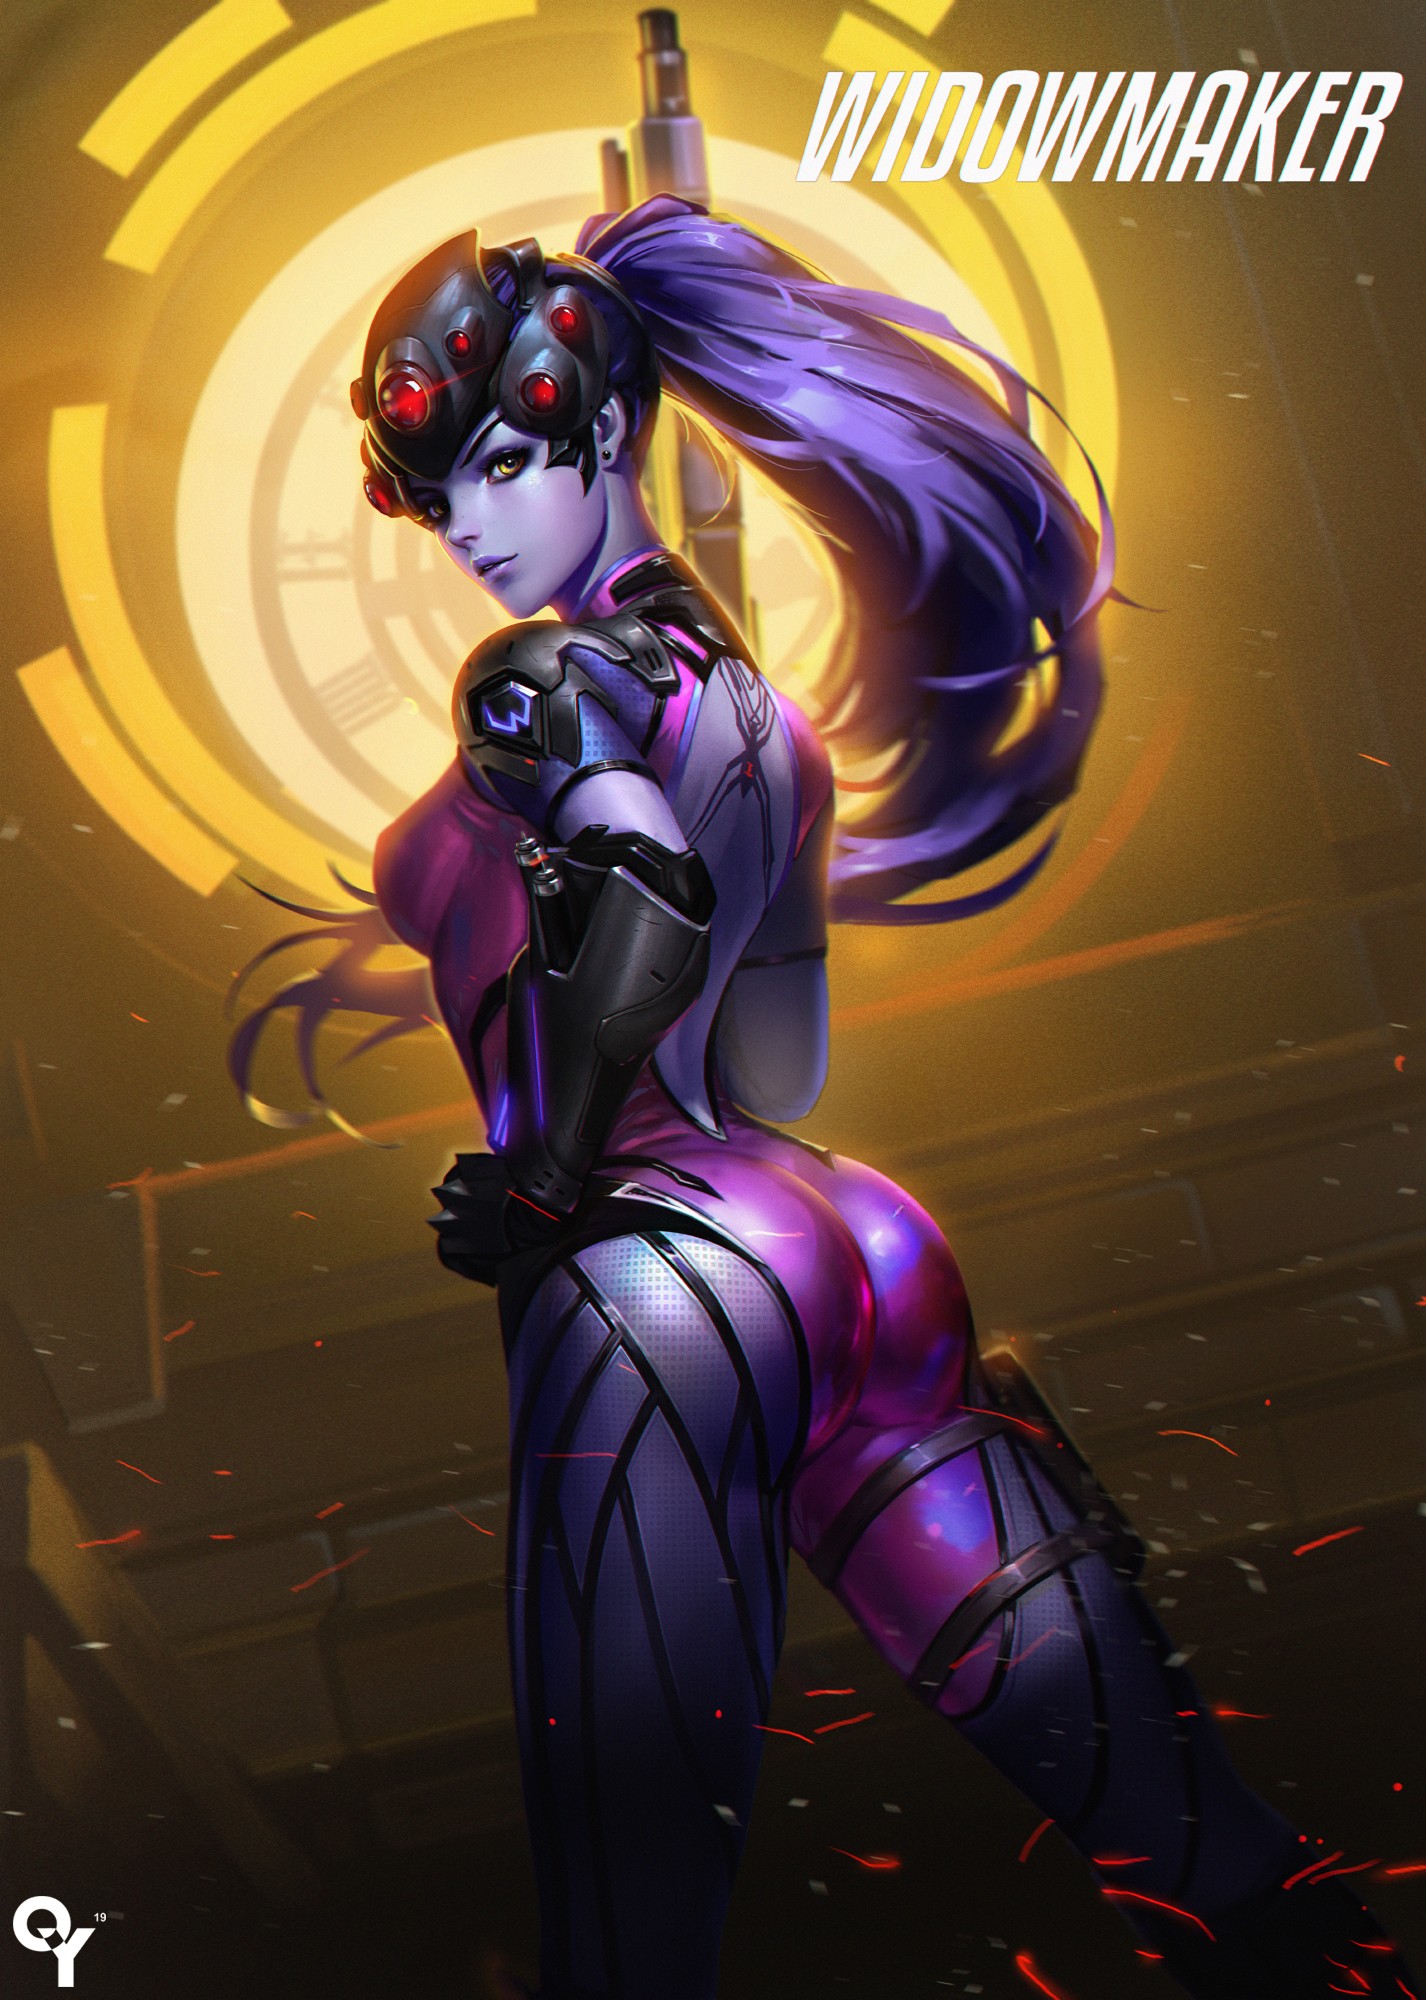 Widowmaker (Overwatch), Long hair, Purple hair, Overwatch, Widowmaker